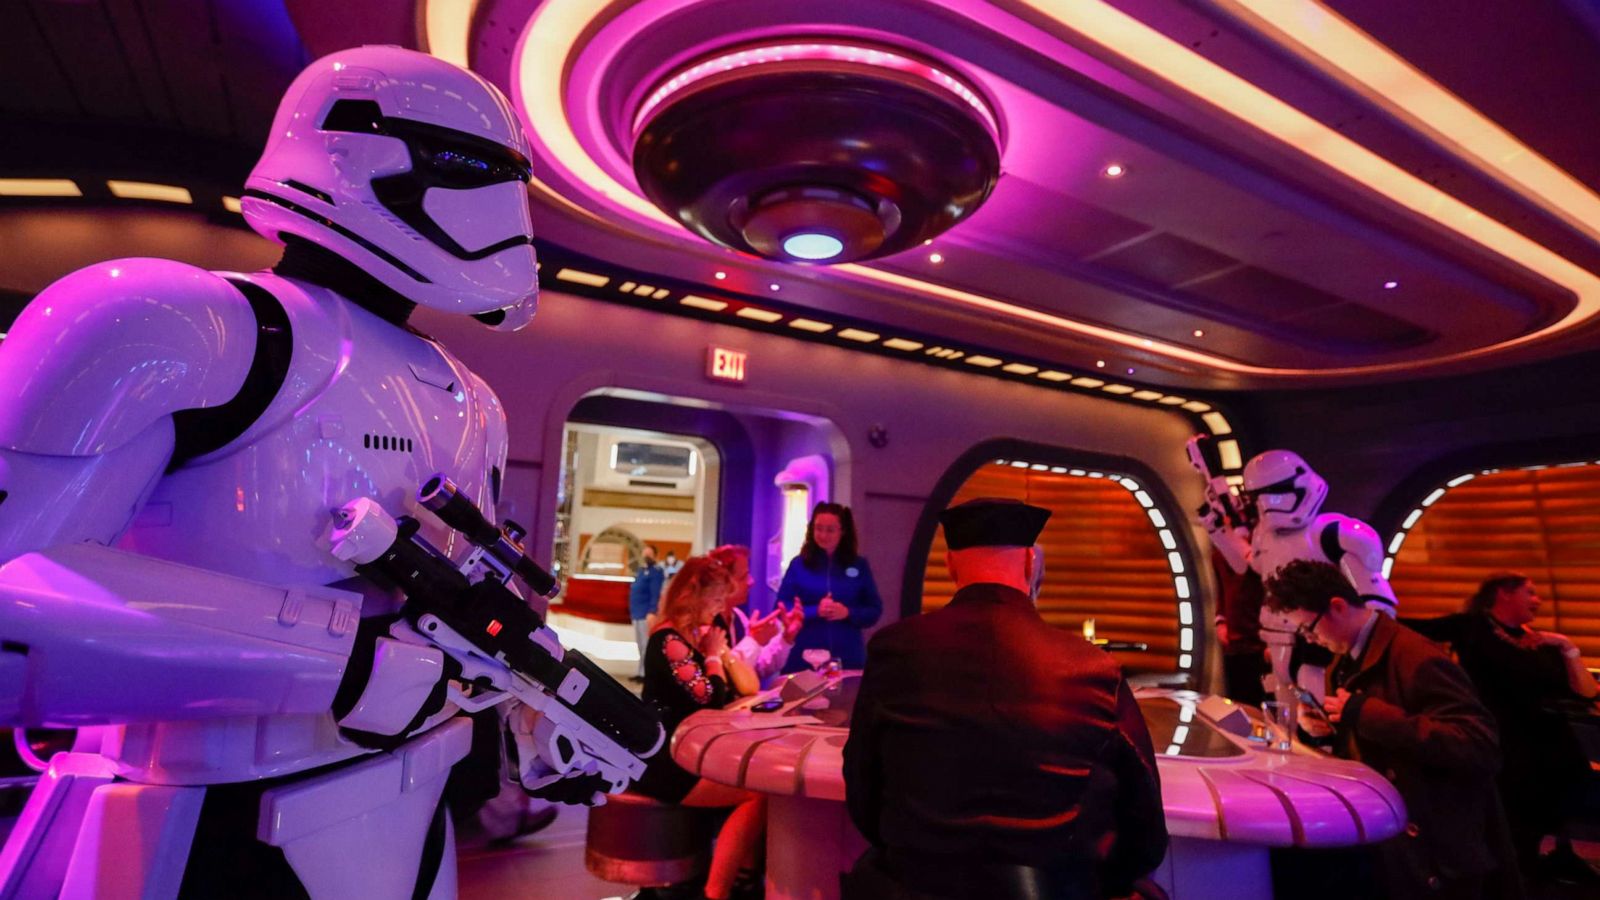 Disneyland After Dark to host 'Star Wars' night